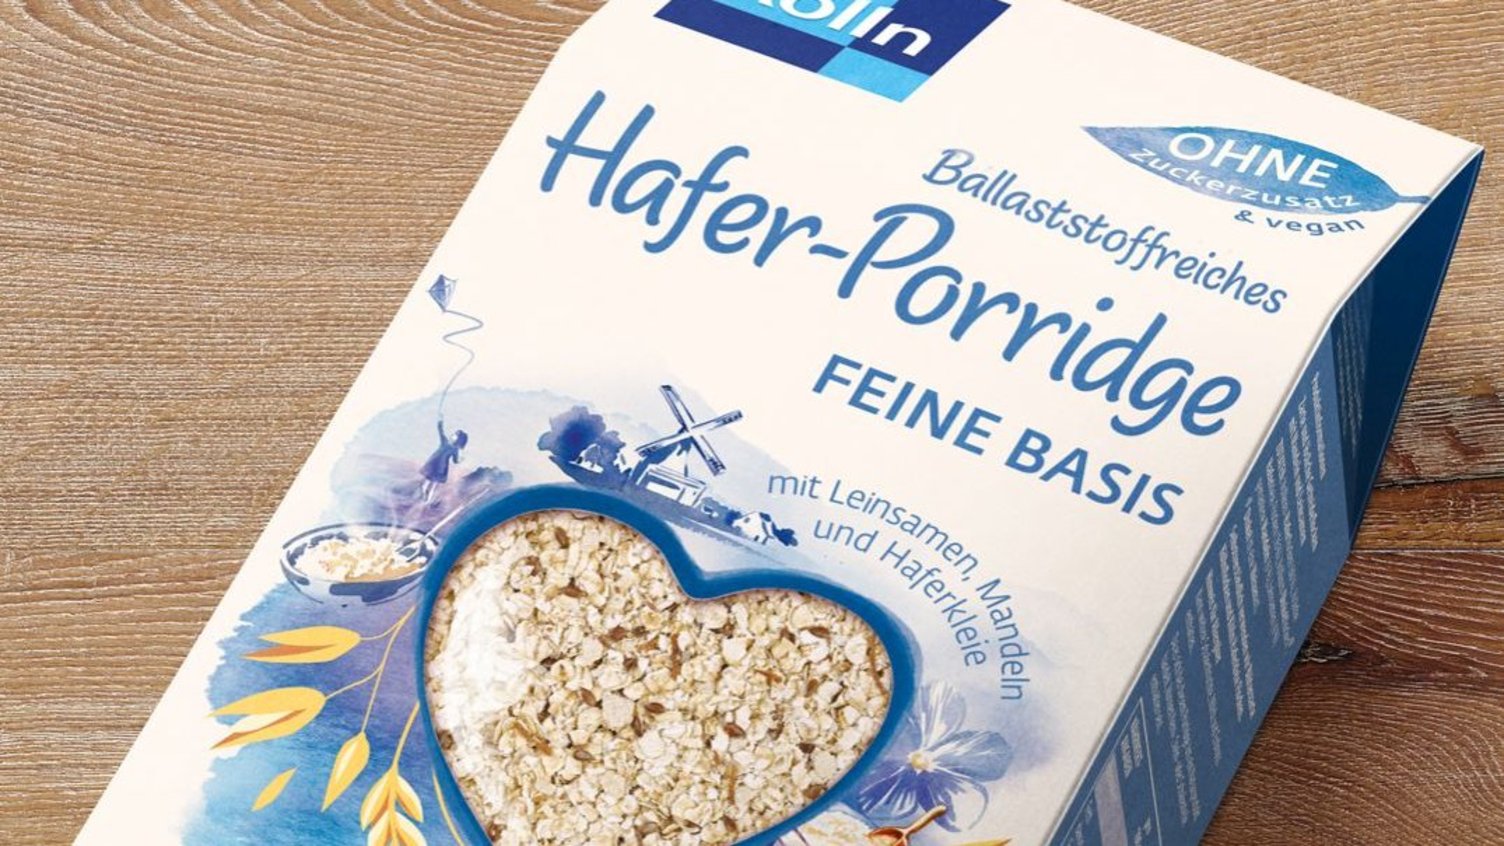 Kölln Hafer-Porridge feine Basis